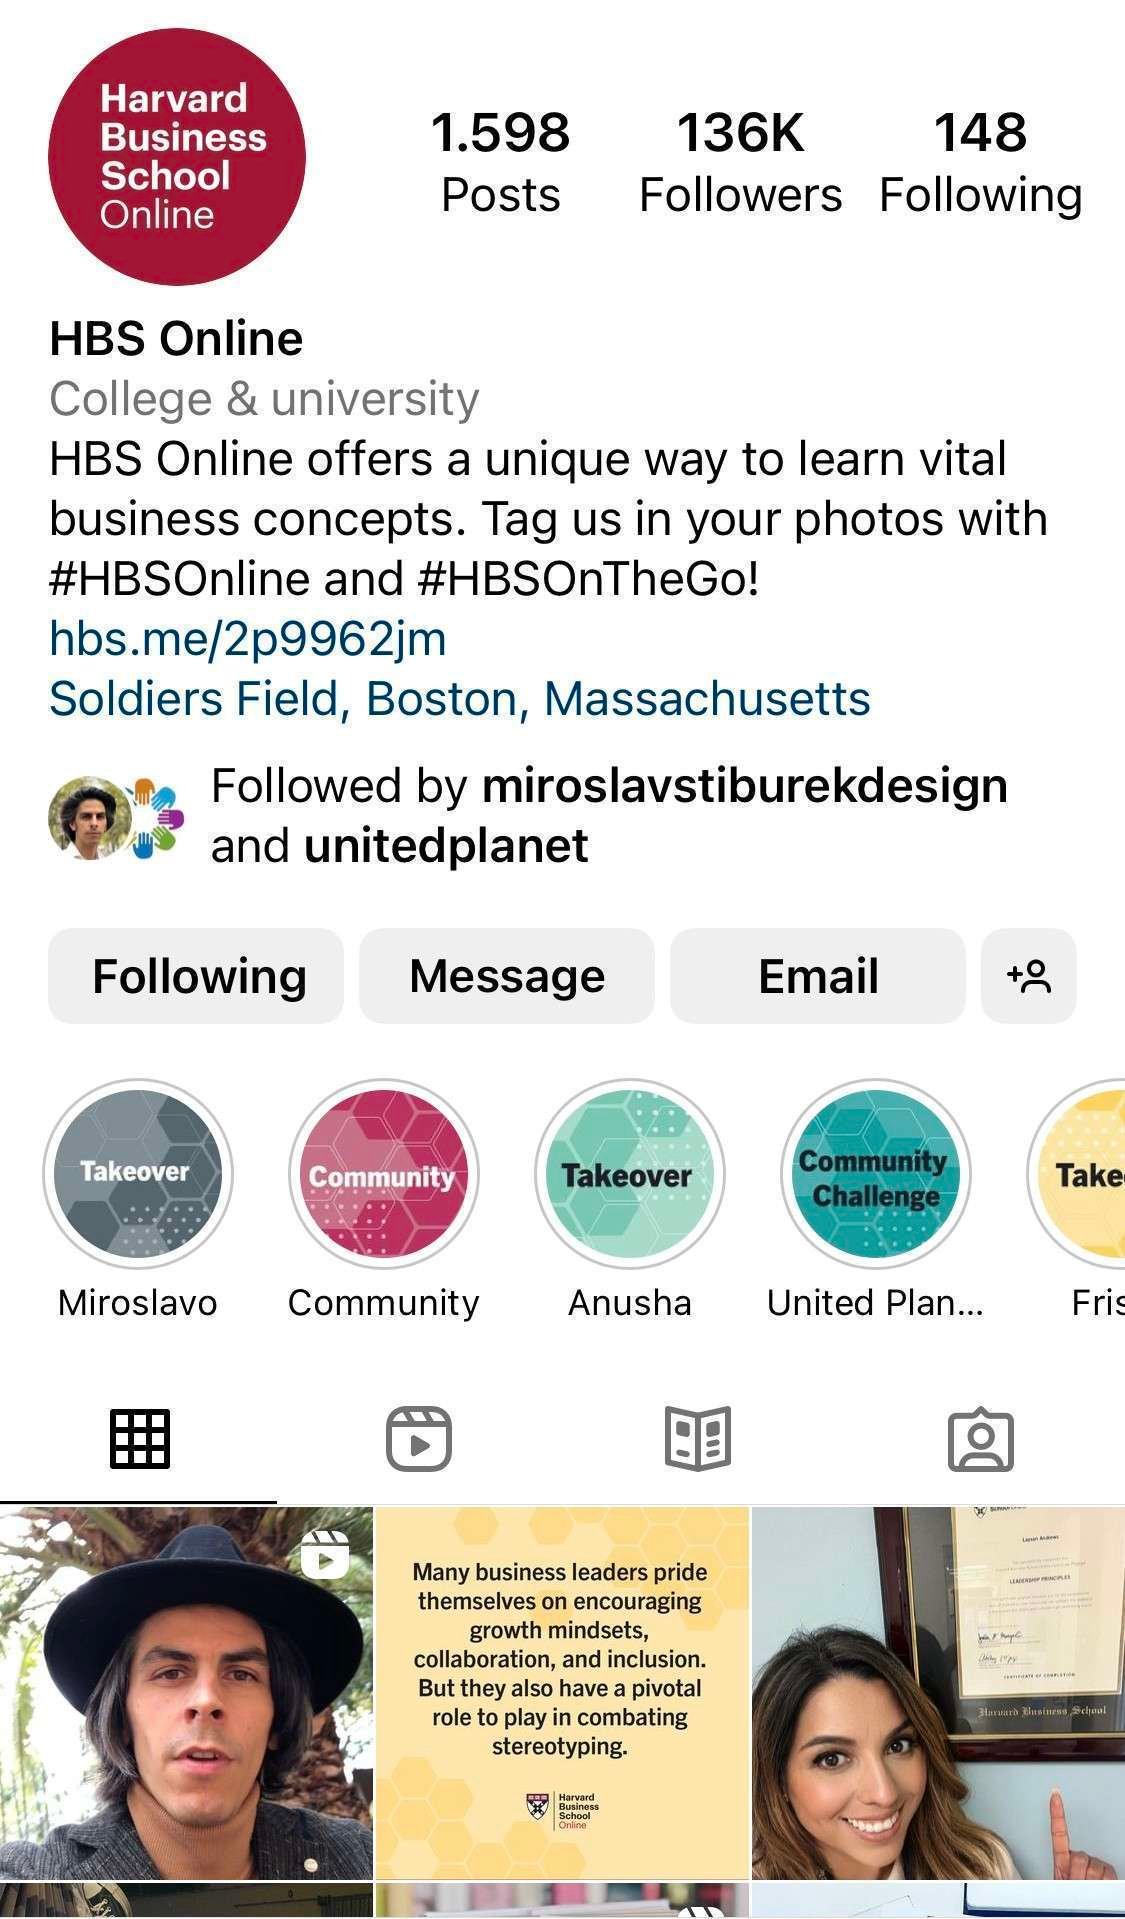 Instagram Takeover of Harvard Business School Online